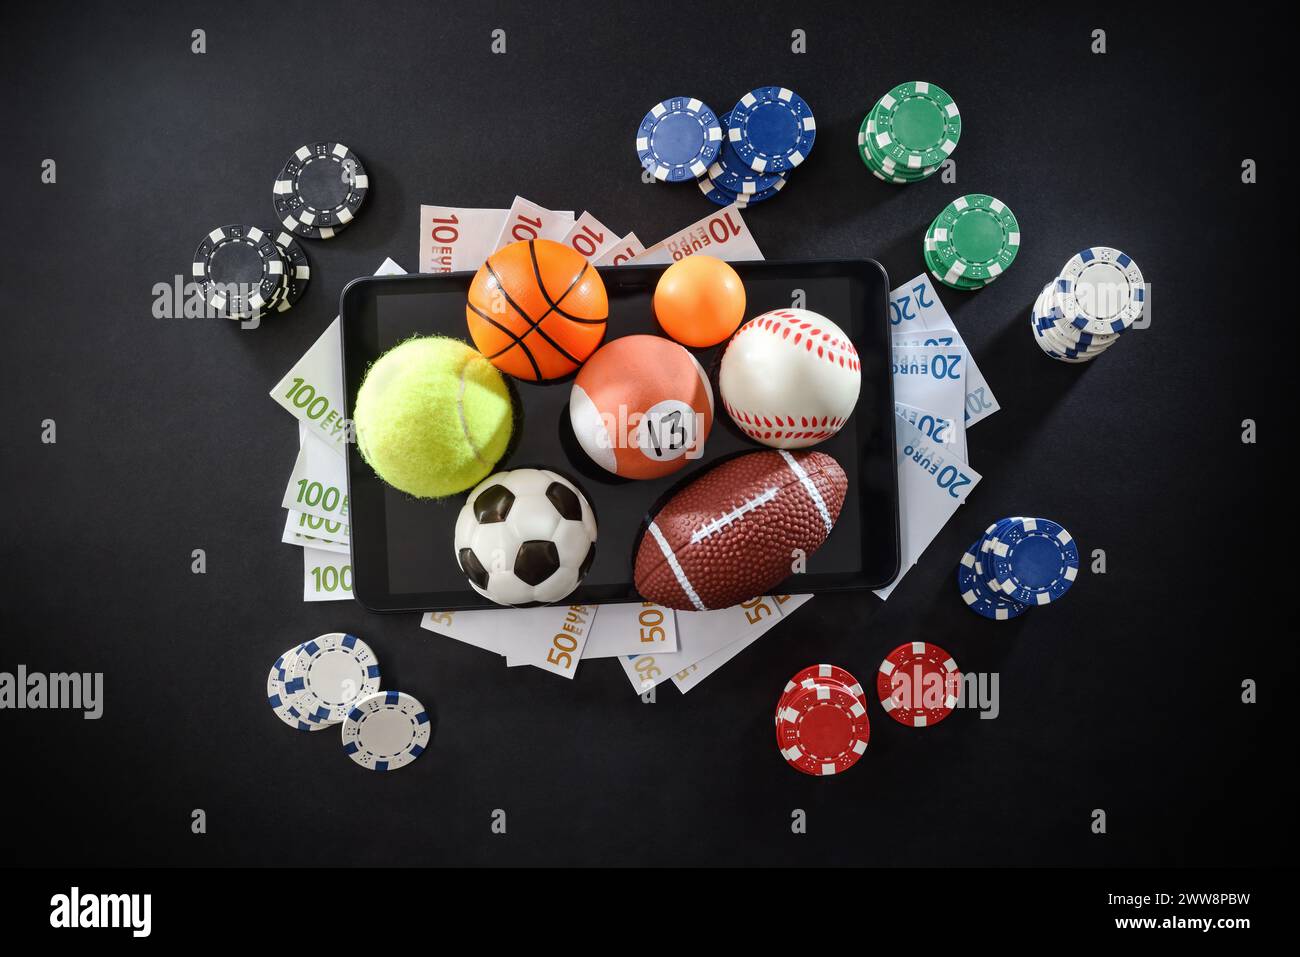 Concetto di scommesse sportive online con palloni sportivi, denaro e chip su dispositivi mobili isolati al centro su sfondo scuro. Vista dall'alto. Foto Stock